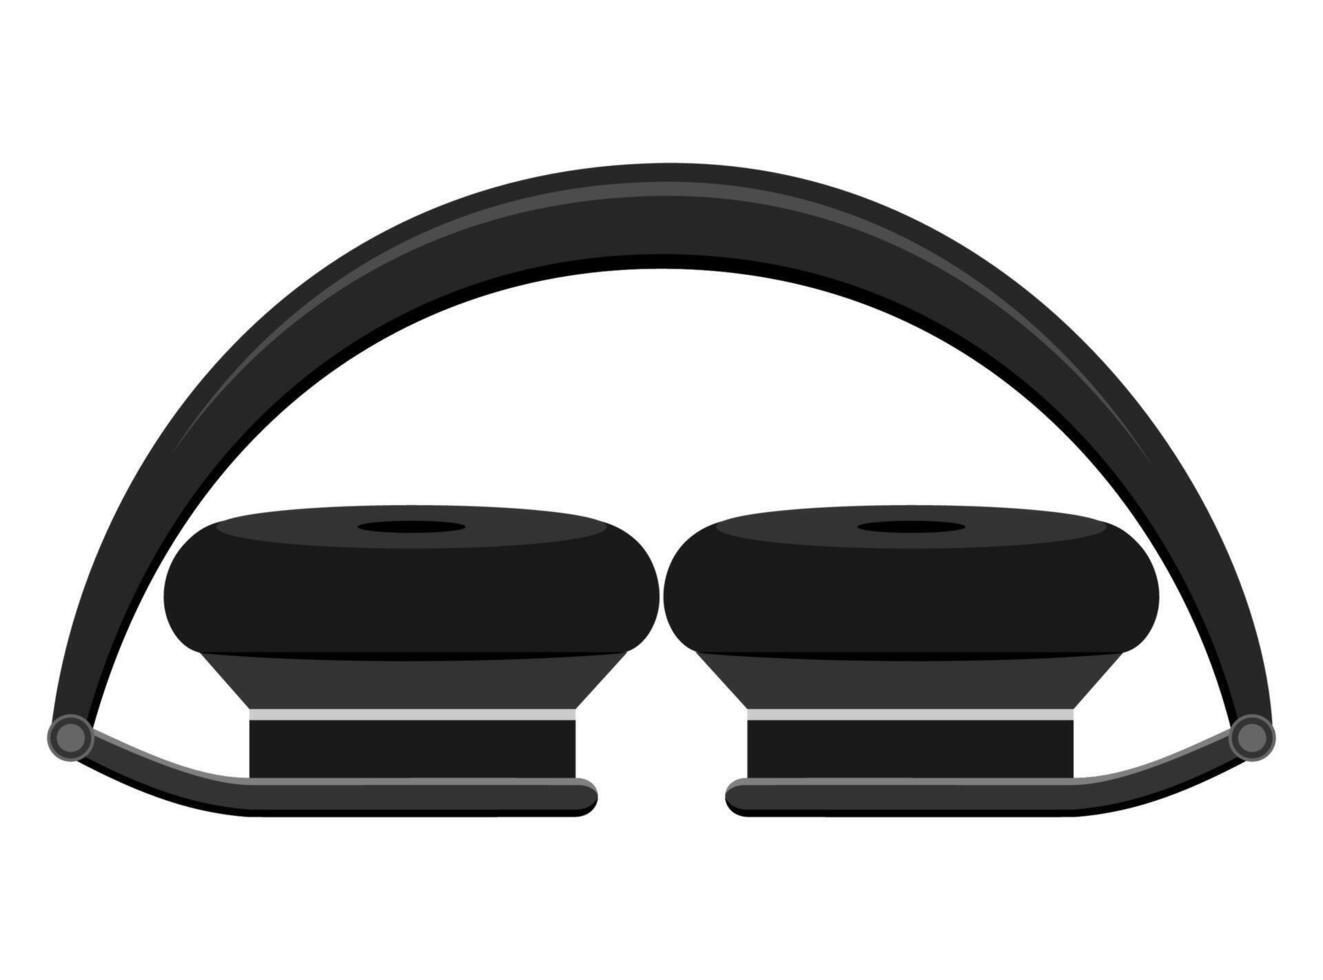 realistische schwarze Kopfhörer stock vector Illustration lokalisiert auf weißem Hintergrund